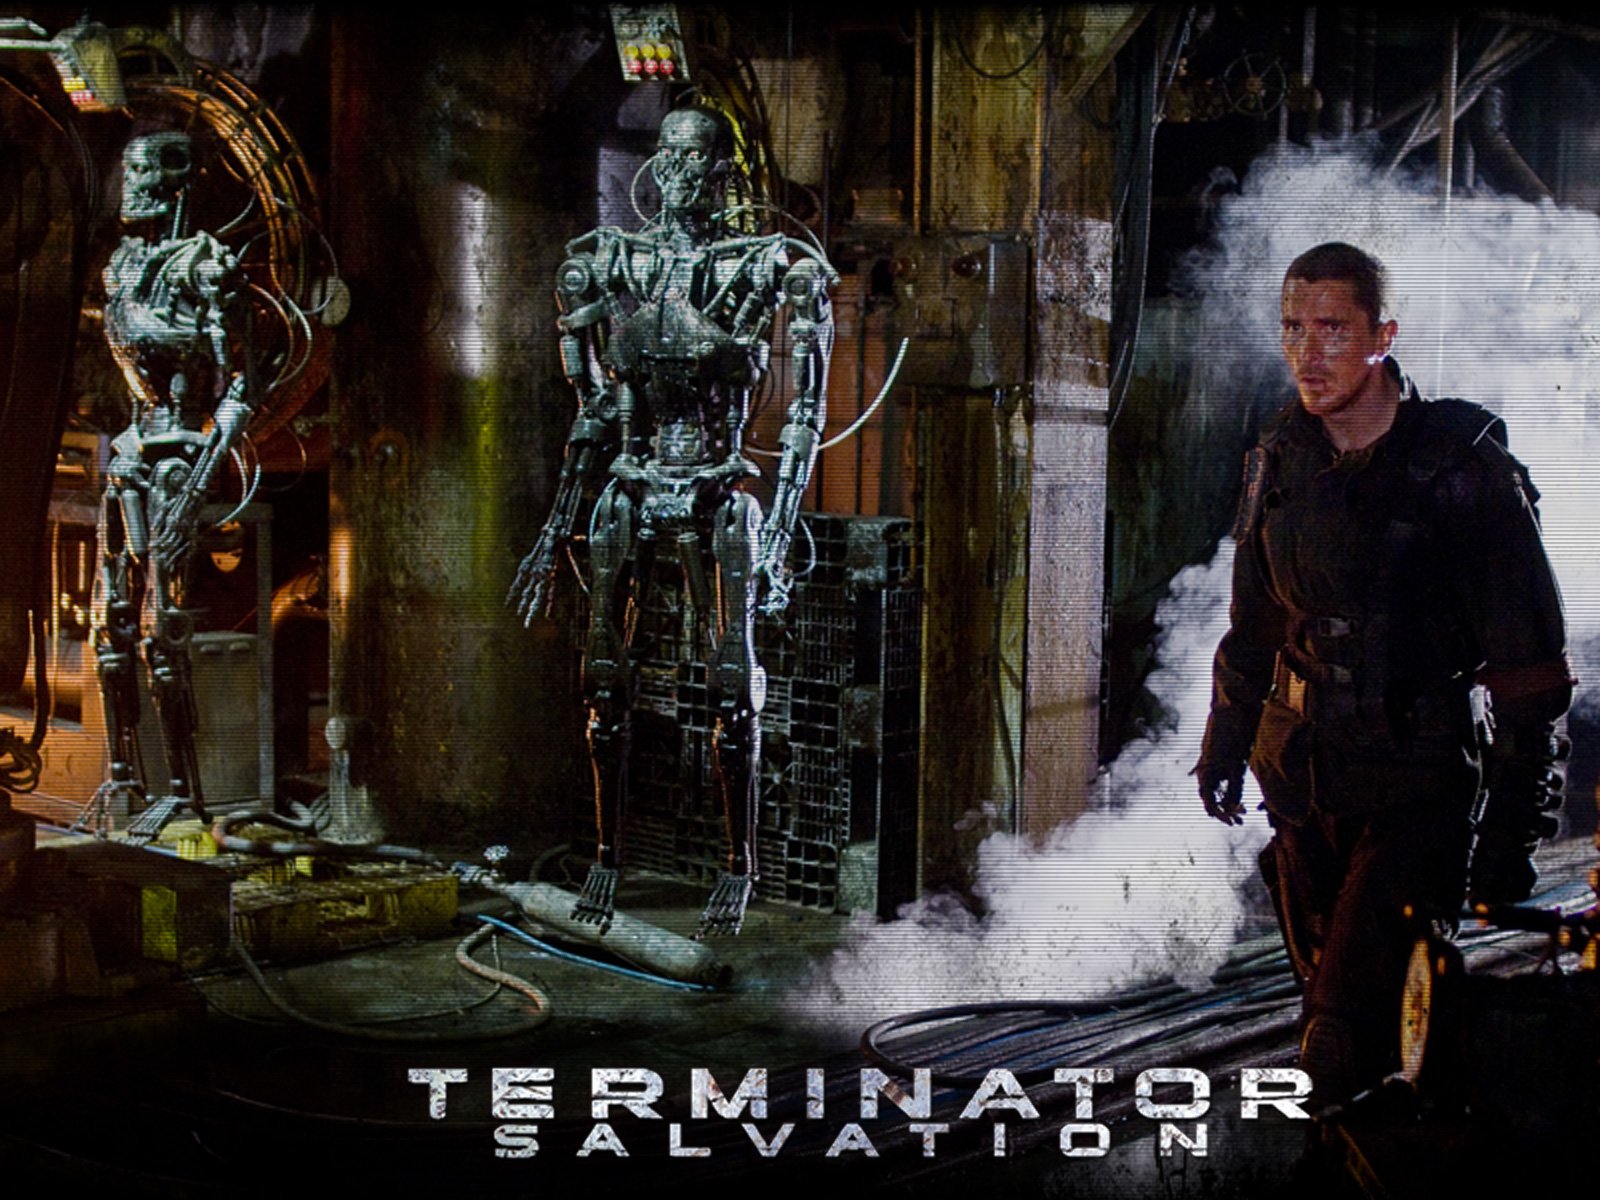 壁纸1600x1200终结者 救世主 Terminator Salvation 电影壁纸 Terminator Salvation 终结者4壁纸 《终结者救世主 Terminator Salvation 》壁纸 《终结者救世主 Terminator Salvation 》图片 《终结者救世主 Terminator Salvation 》素材 影视壁纸 影视图库 影视图片素材桌面壁纸